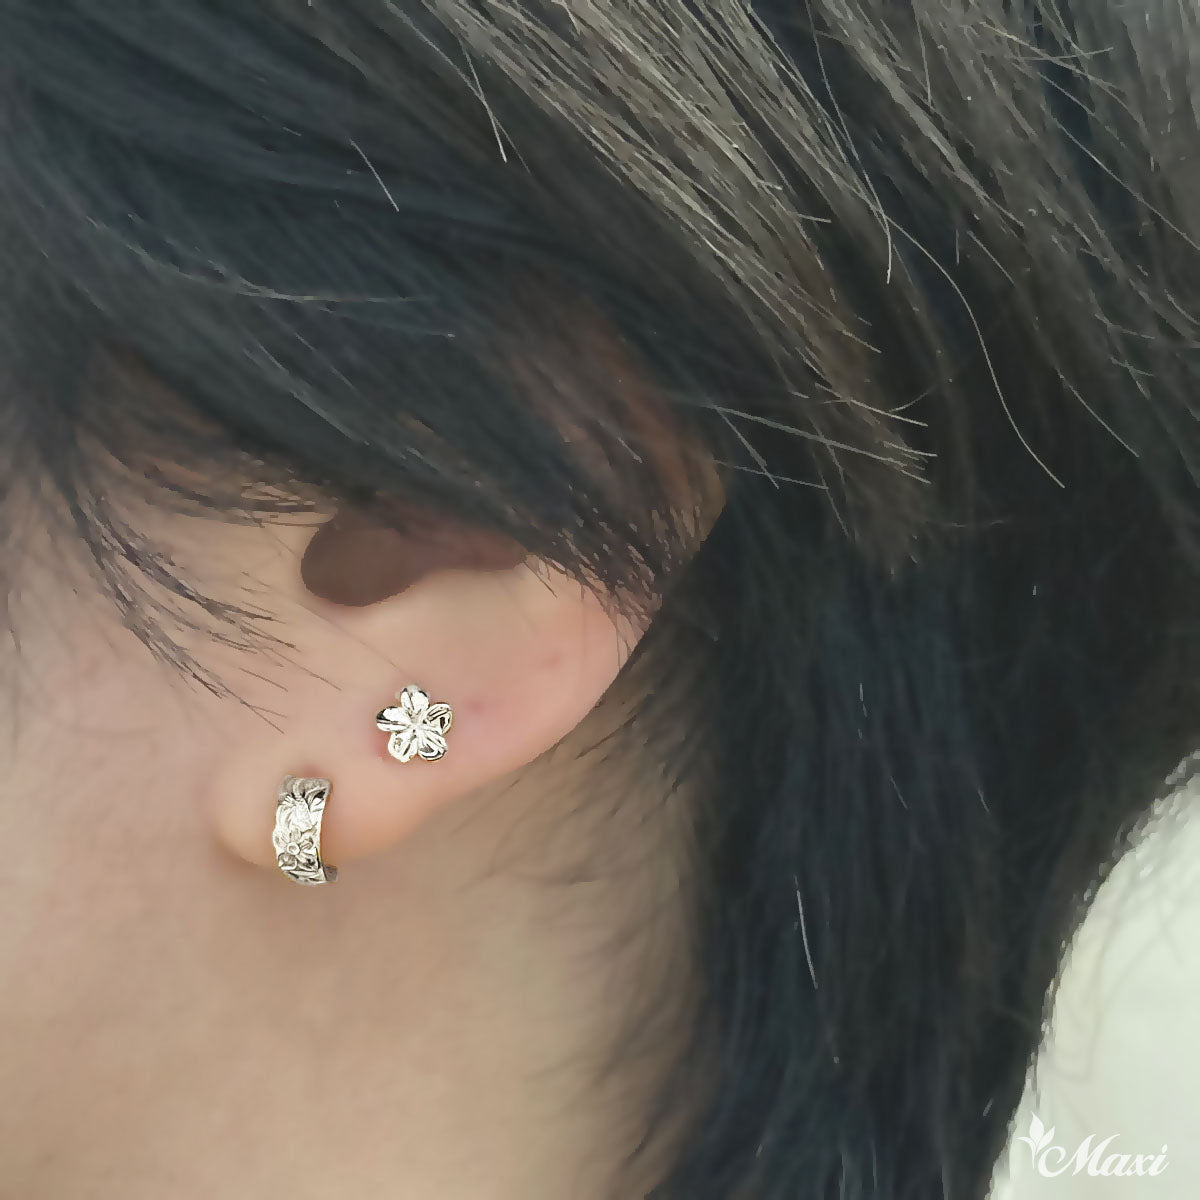 Silver 925] Petite Hawaiian Plumeria Flower Pierced Earring*Made